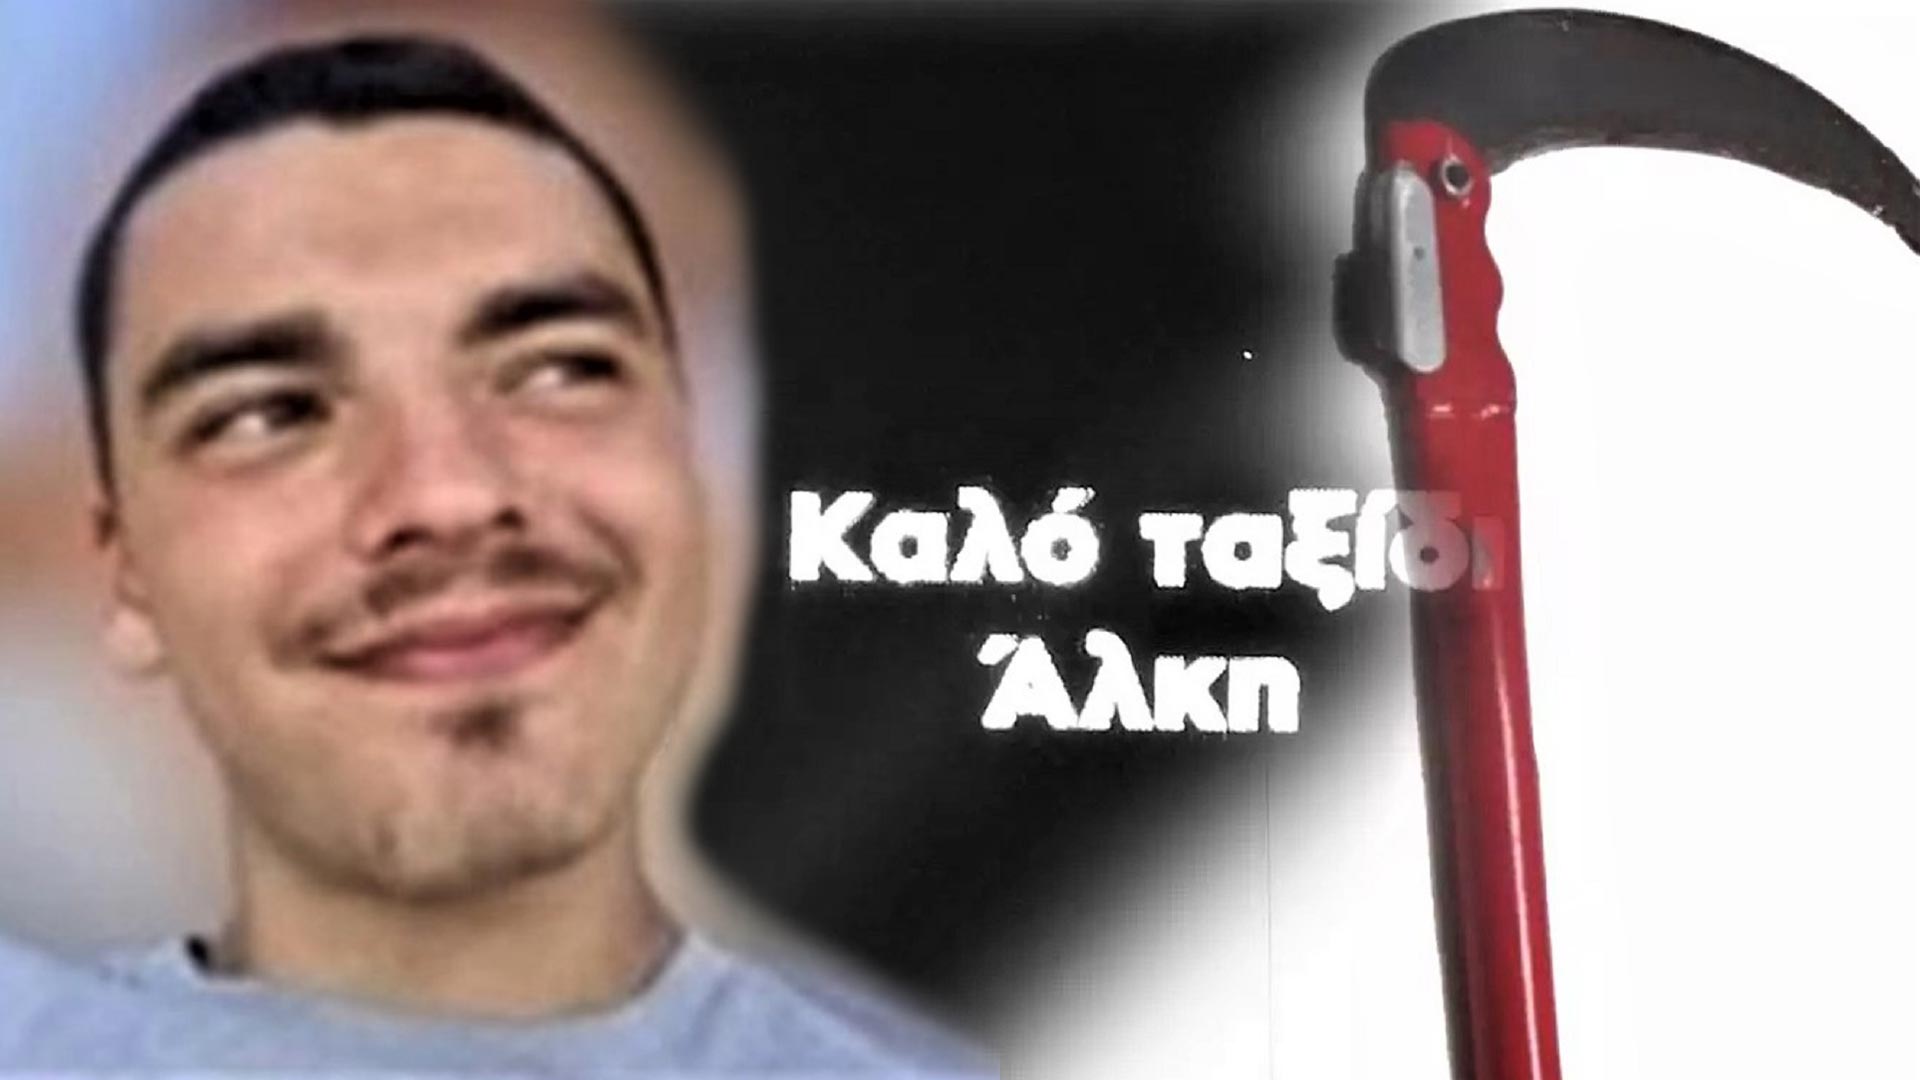 Δολοφονία Άλκη: Δείτε τον 21χρονο με το δρεπάνι της επίθεσης - Τον «έδωσε» ο 23χρονος Αλβανός